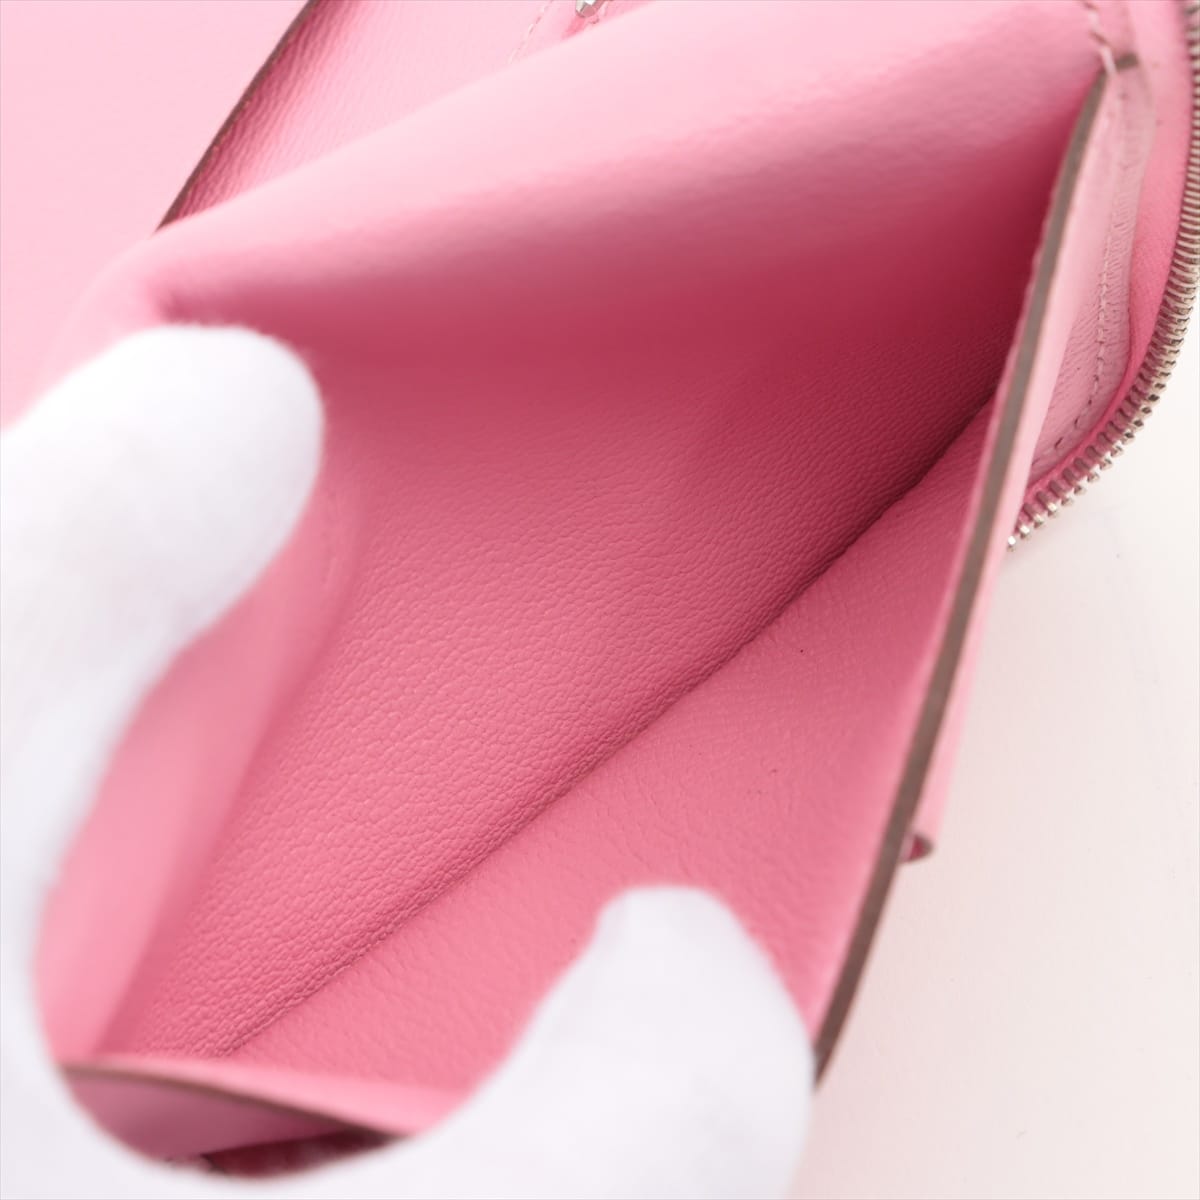 Hermès Agenda Alligator Notebook cover Pink Silver Metal fittings □N:2010 Round zip